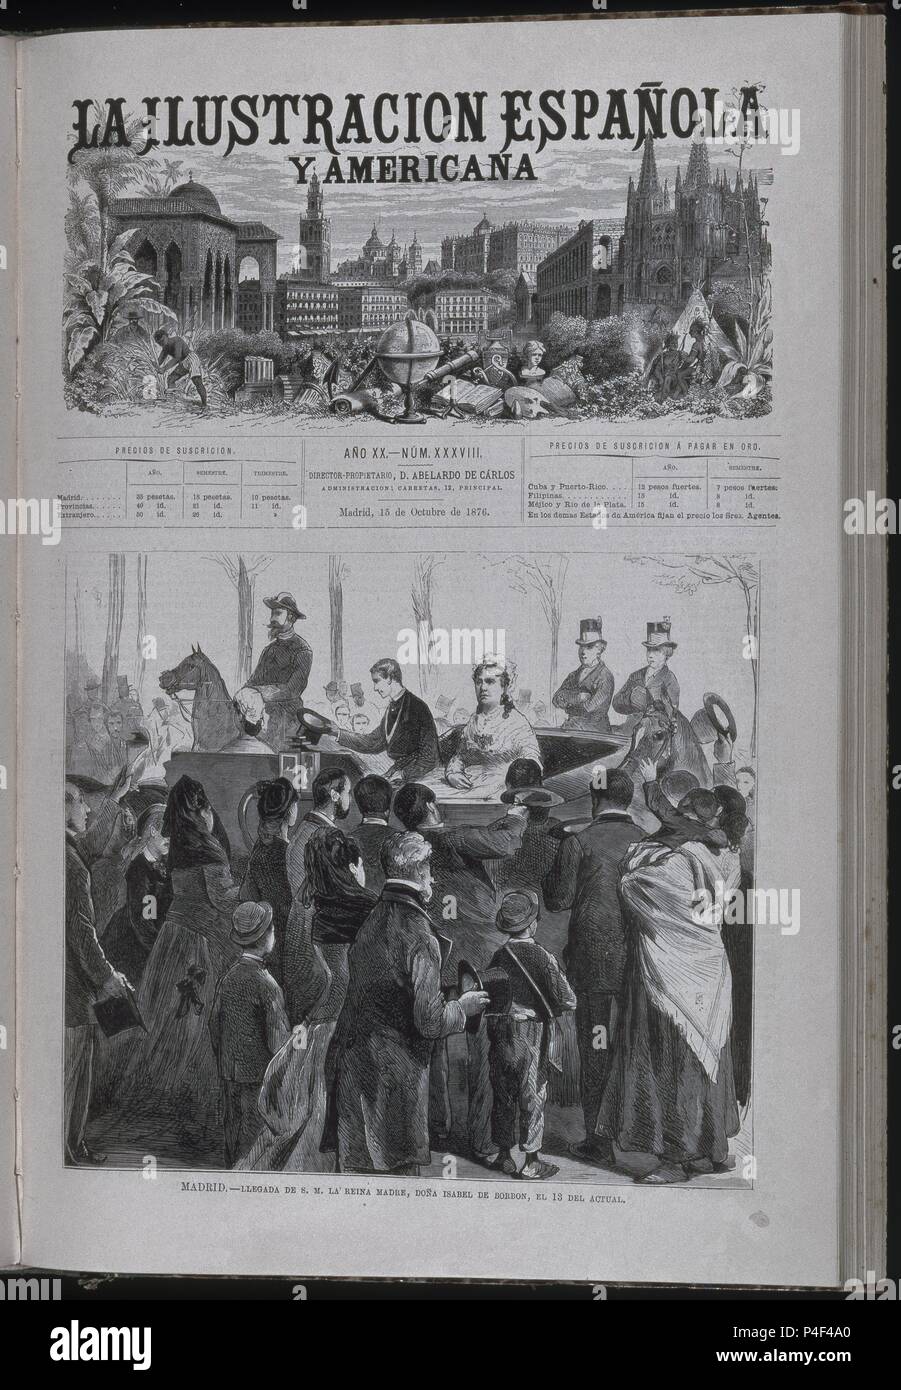 Arrivée de Isabel II CON ALFONSO XII A MADRID - ILUSTRACION ESPAÑOLA Y AMERICANA 15/10/1876. Emplacement : SENADO-BIBLIOTECA-COLECCION, MADRID. Banque D'Images